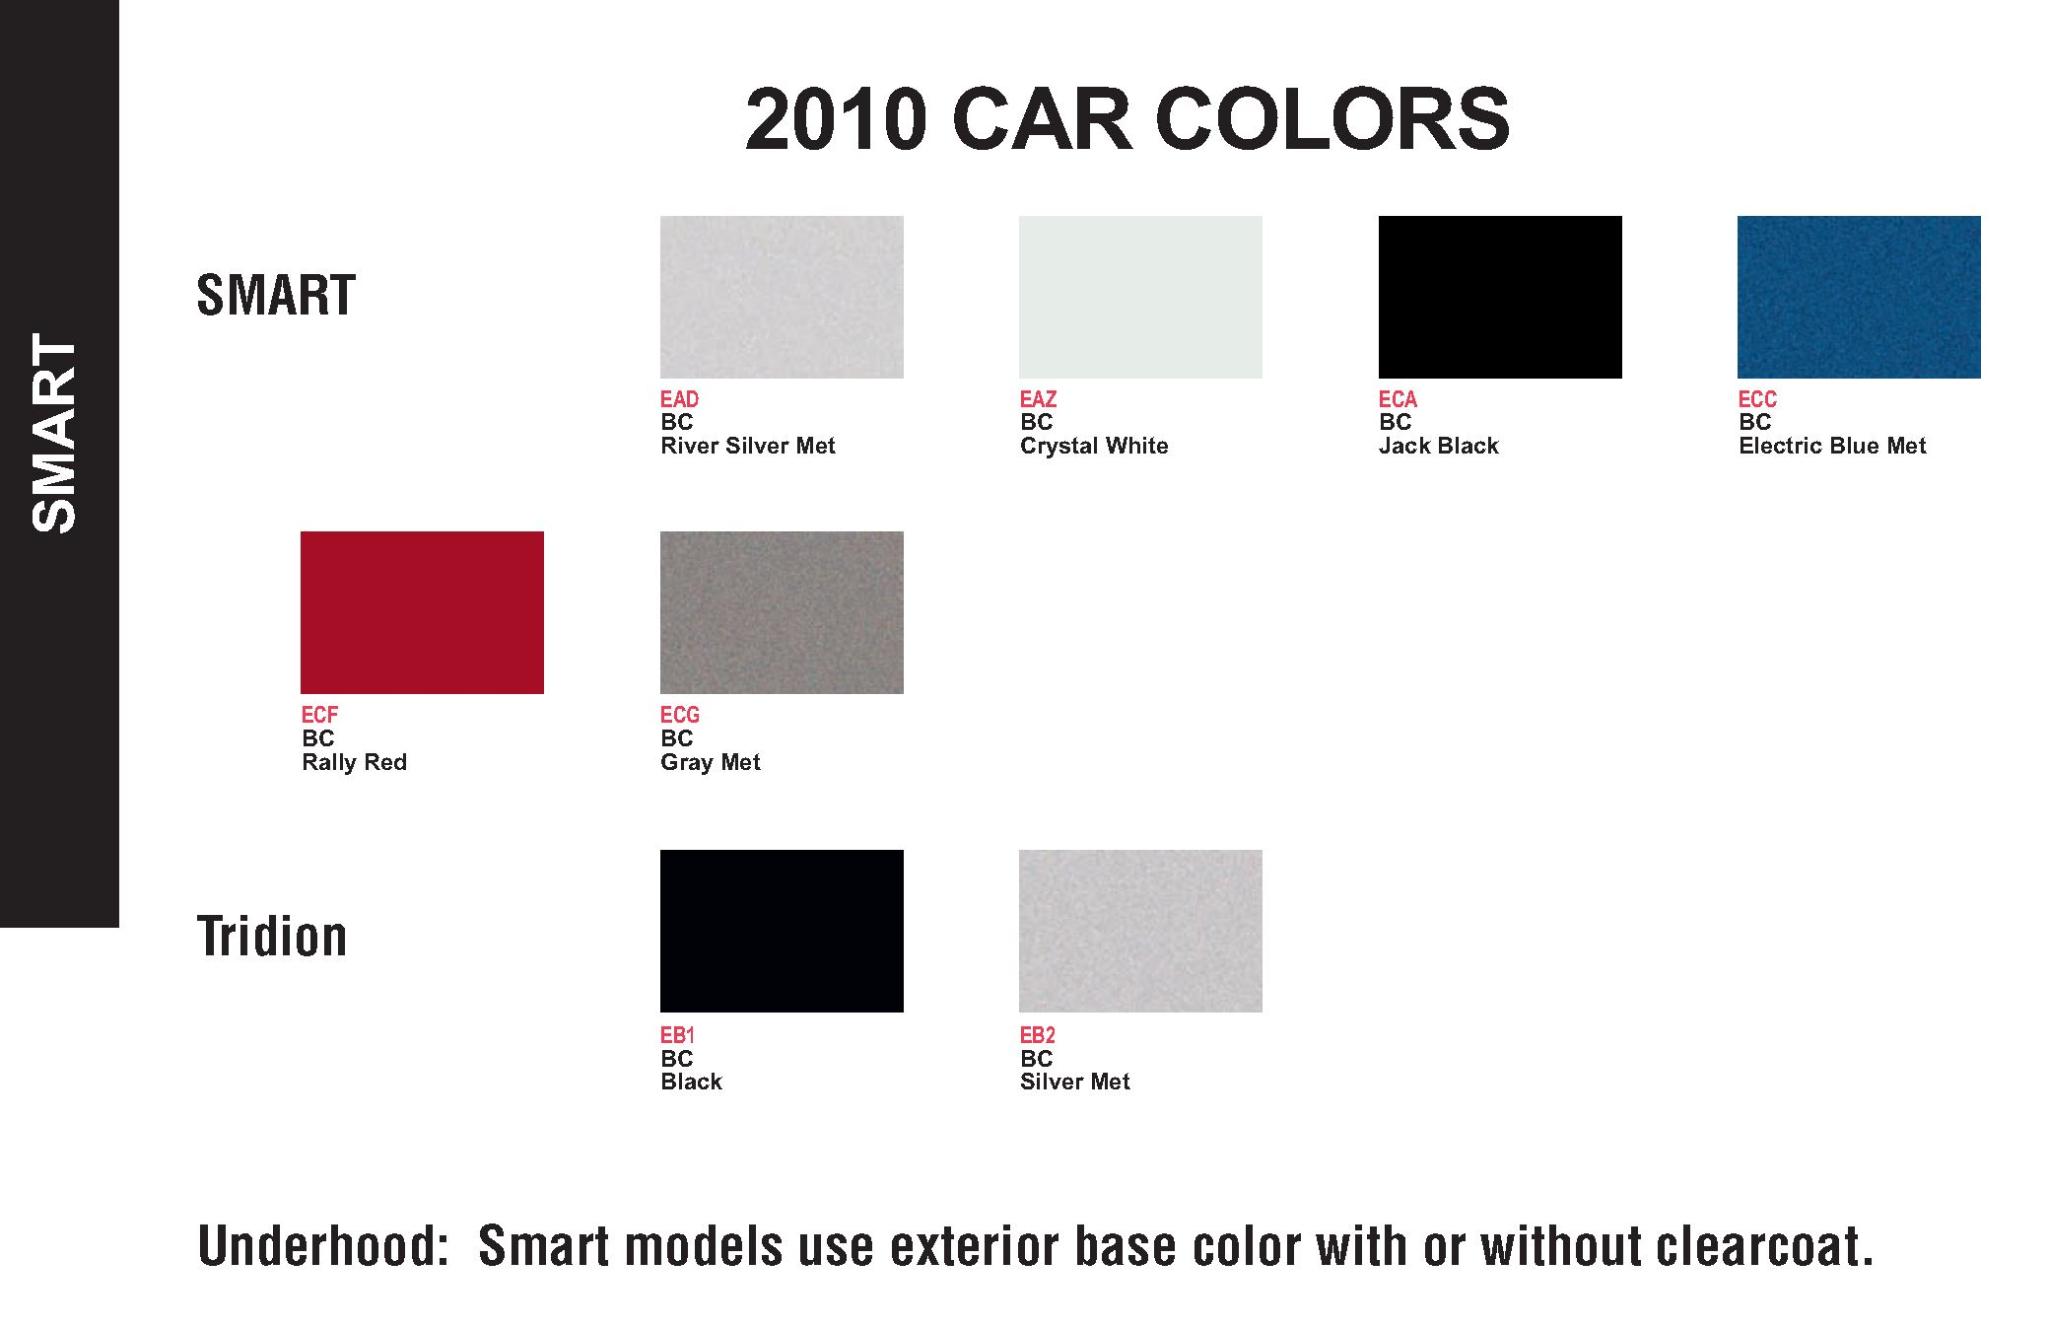 All 2010 Smart car color codes